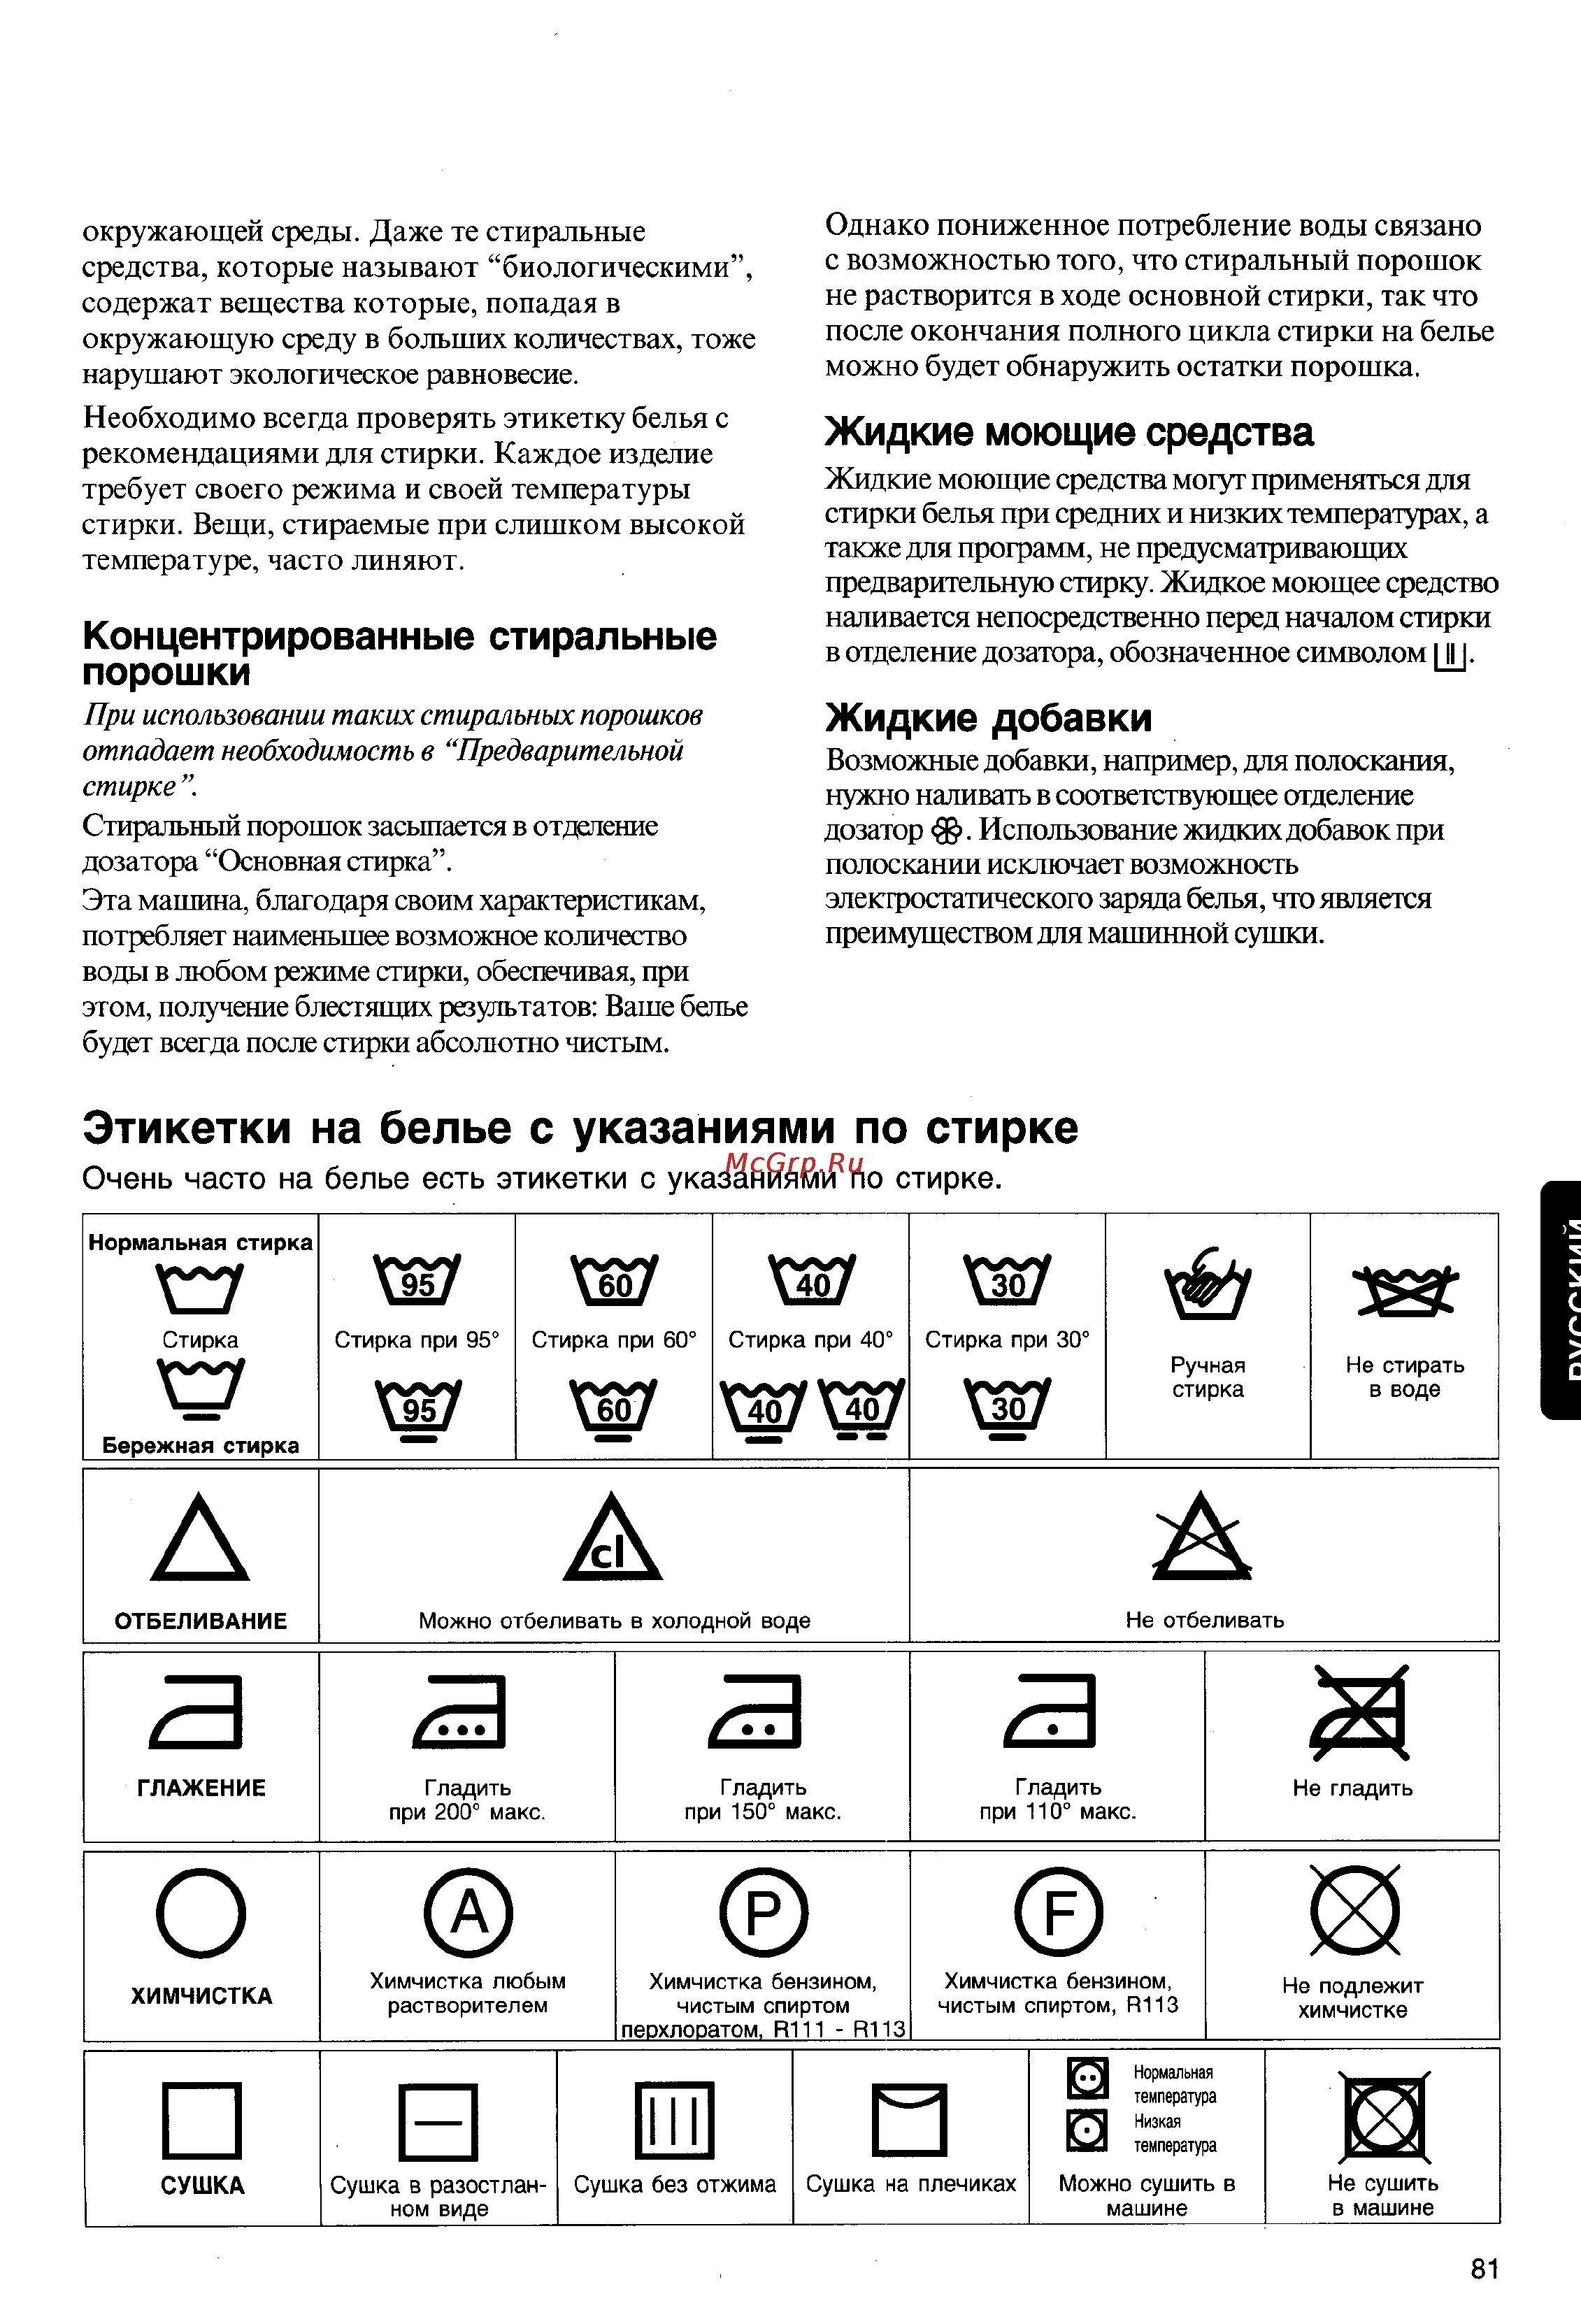 Как продезинфицировать стиральную машину после стирки обуви - женский журнал wumens.su